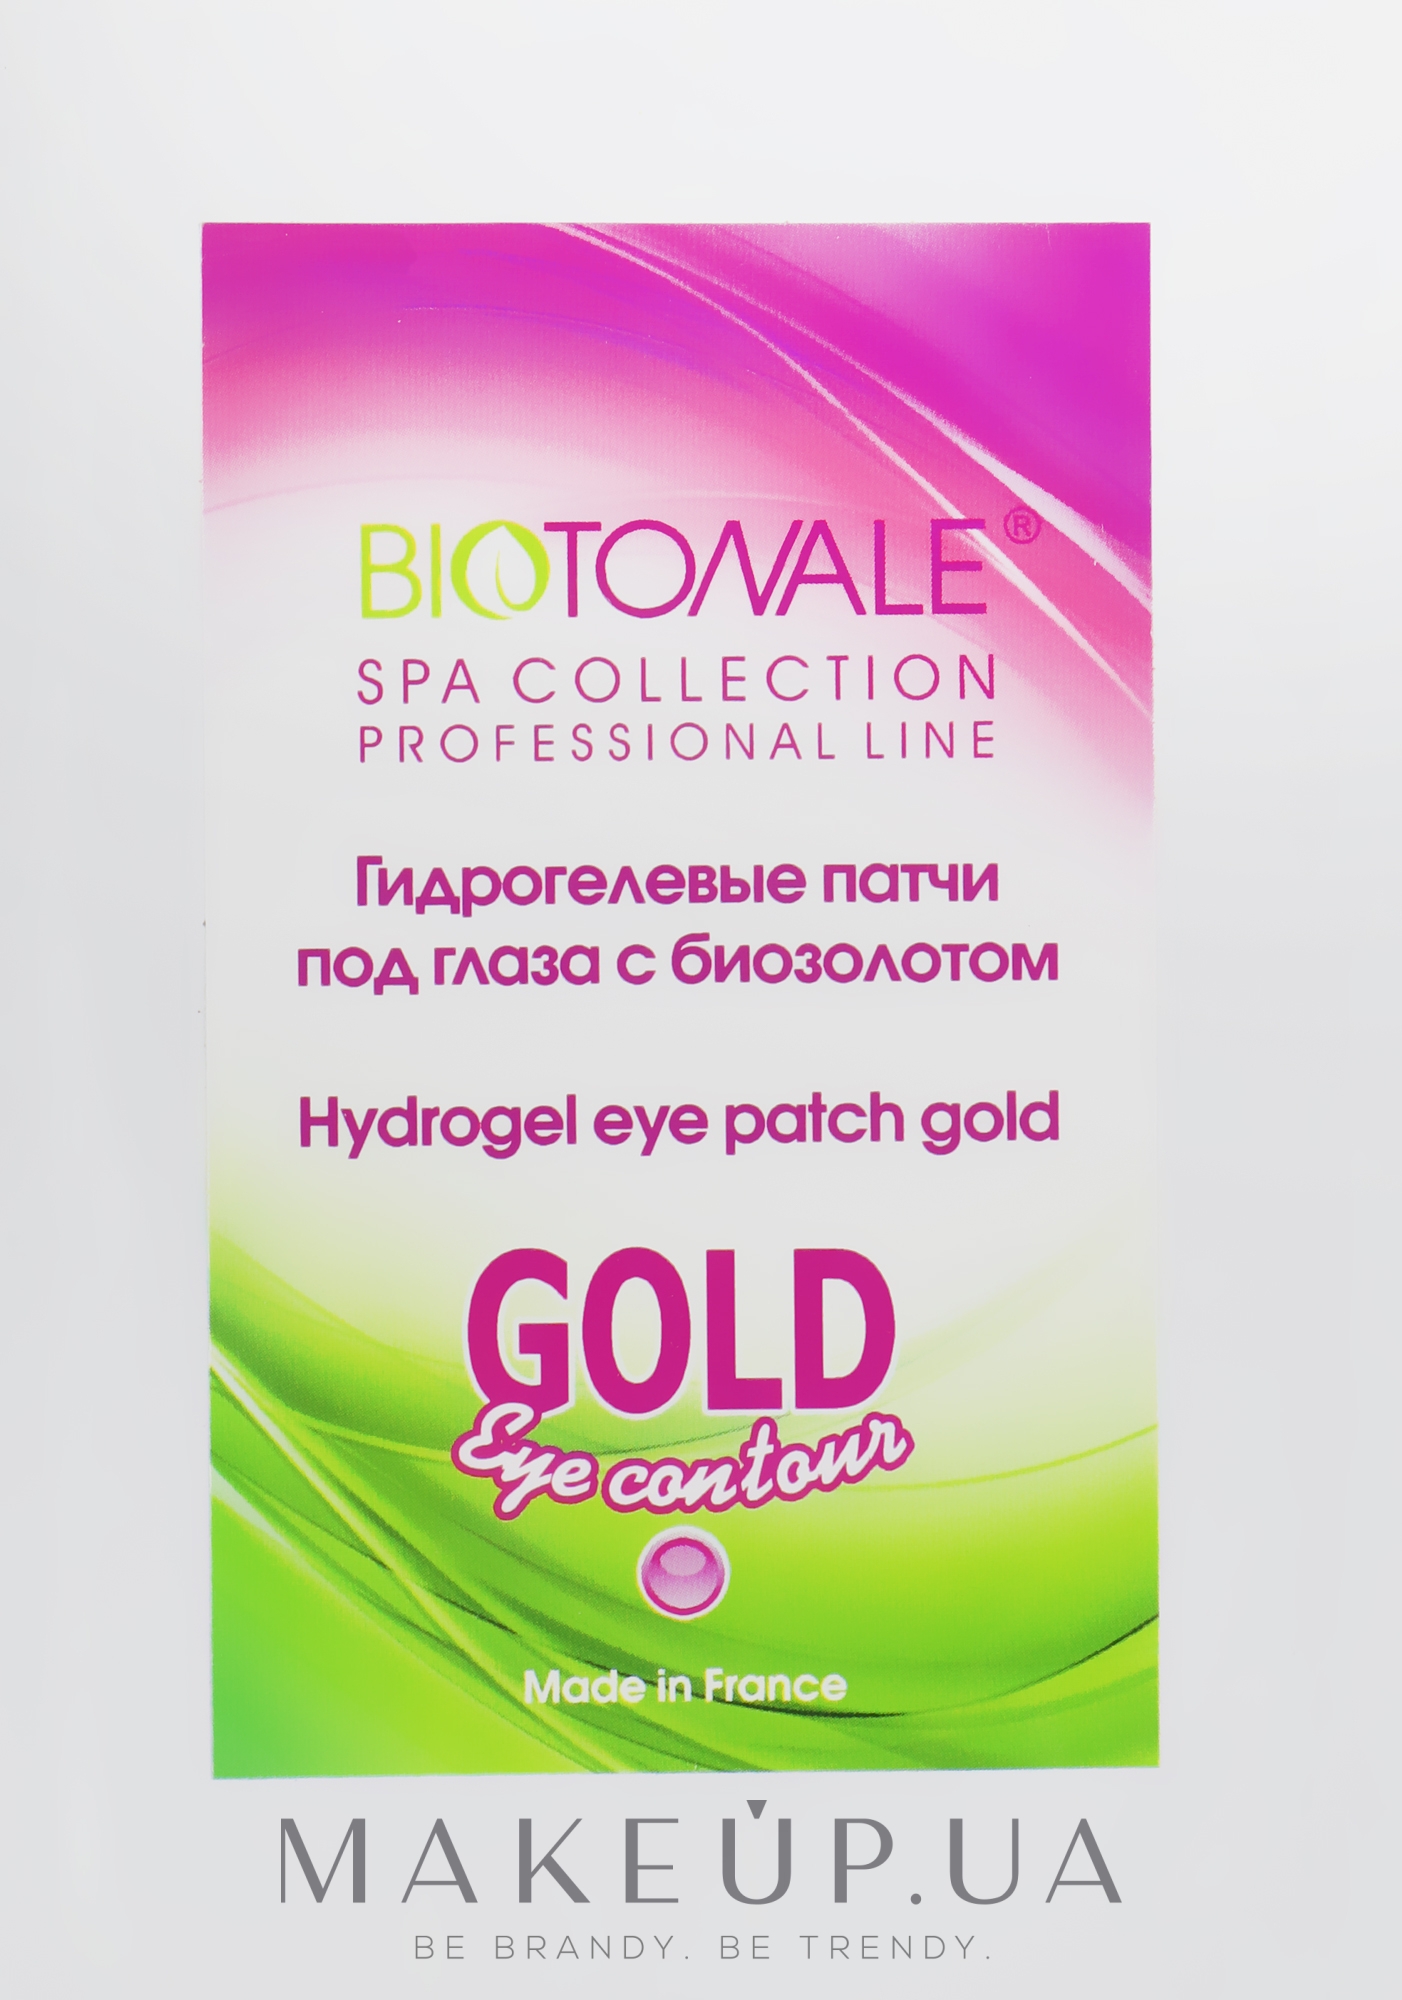 Гідрогелеві патчі під очі з біозолотом - Biotonale Hydrogel Eye Patch Gold — фото 1x2шт